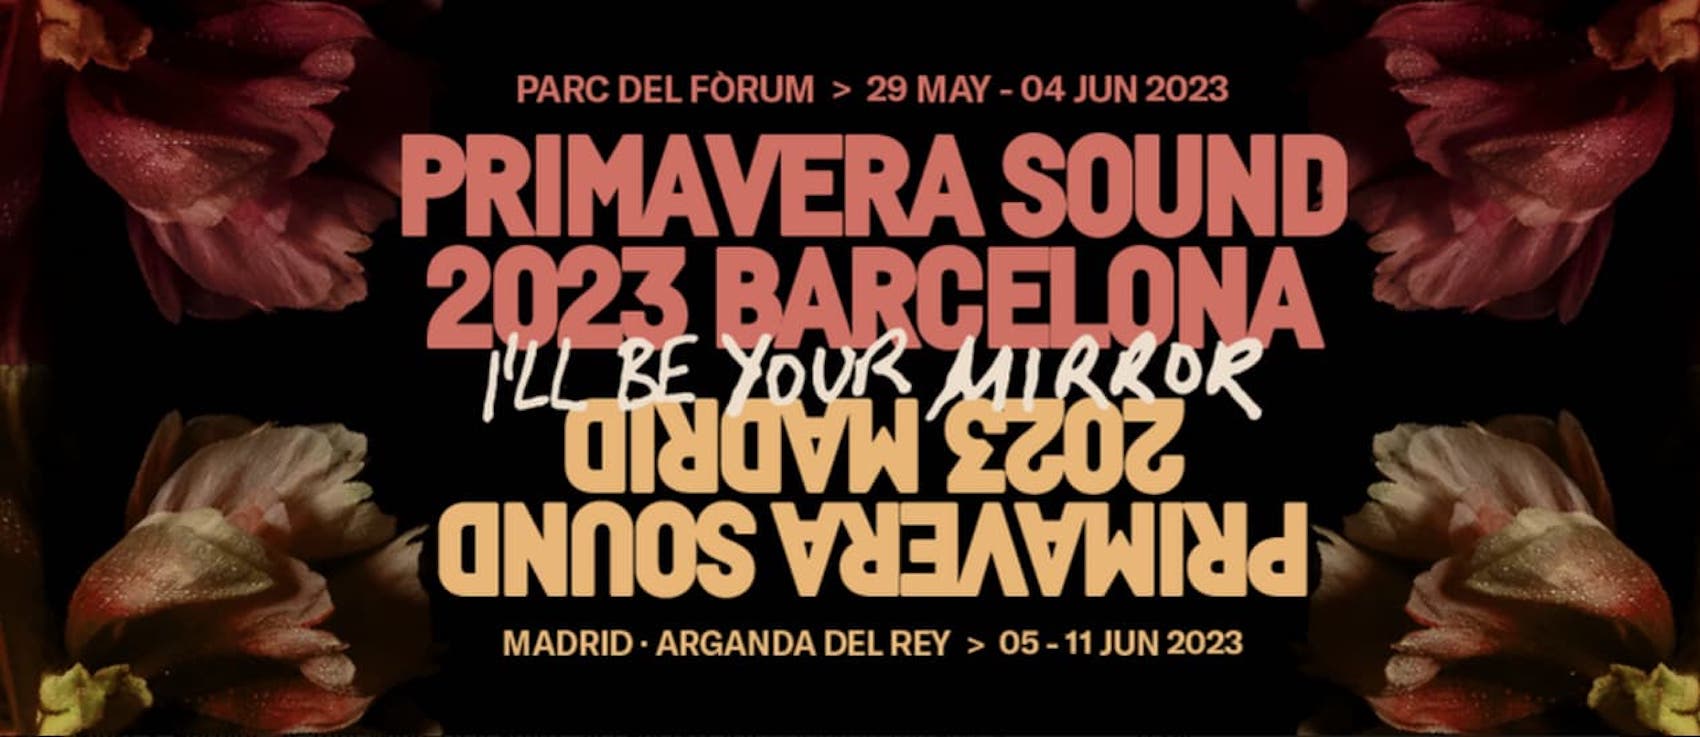 Primavera Sound Barcellona Madrid 2023 1